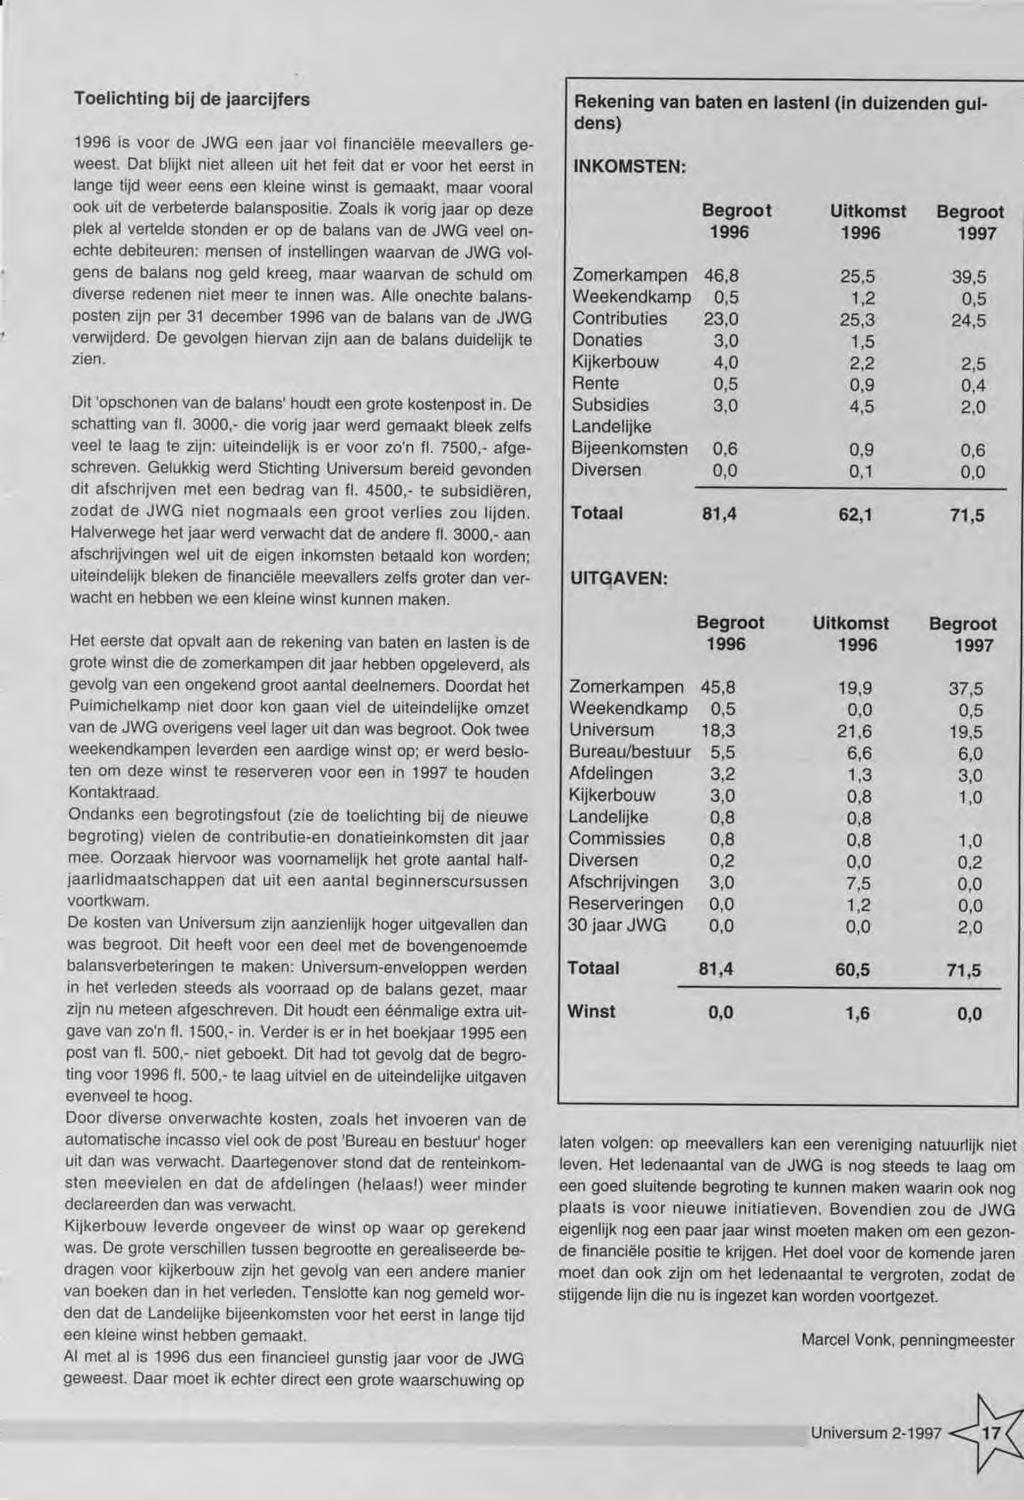 1996 is voor de JW G een jaar vol financiële m eevallers geweest.